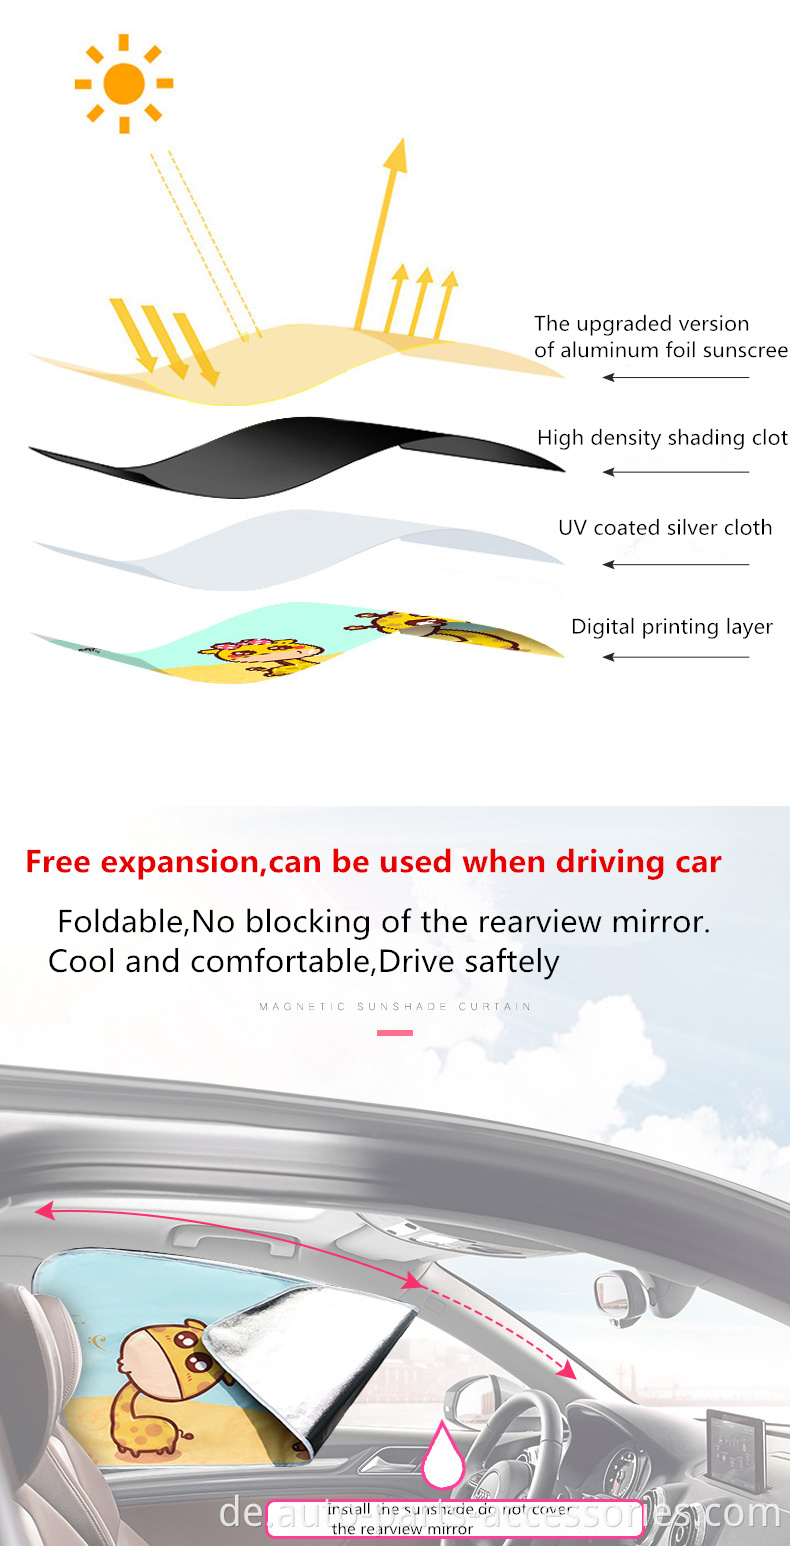 Benutzerdefinierte Logo Digital bedrucktes Babyseite Clean Sunshades Autoschuh für Fenster